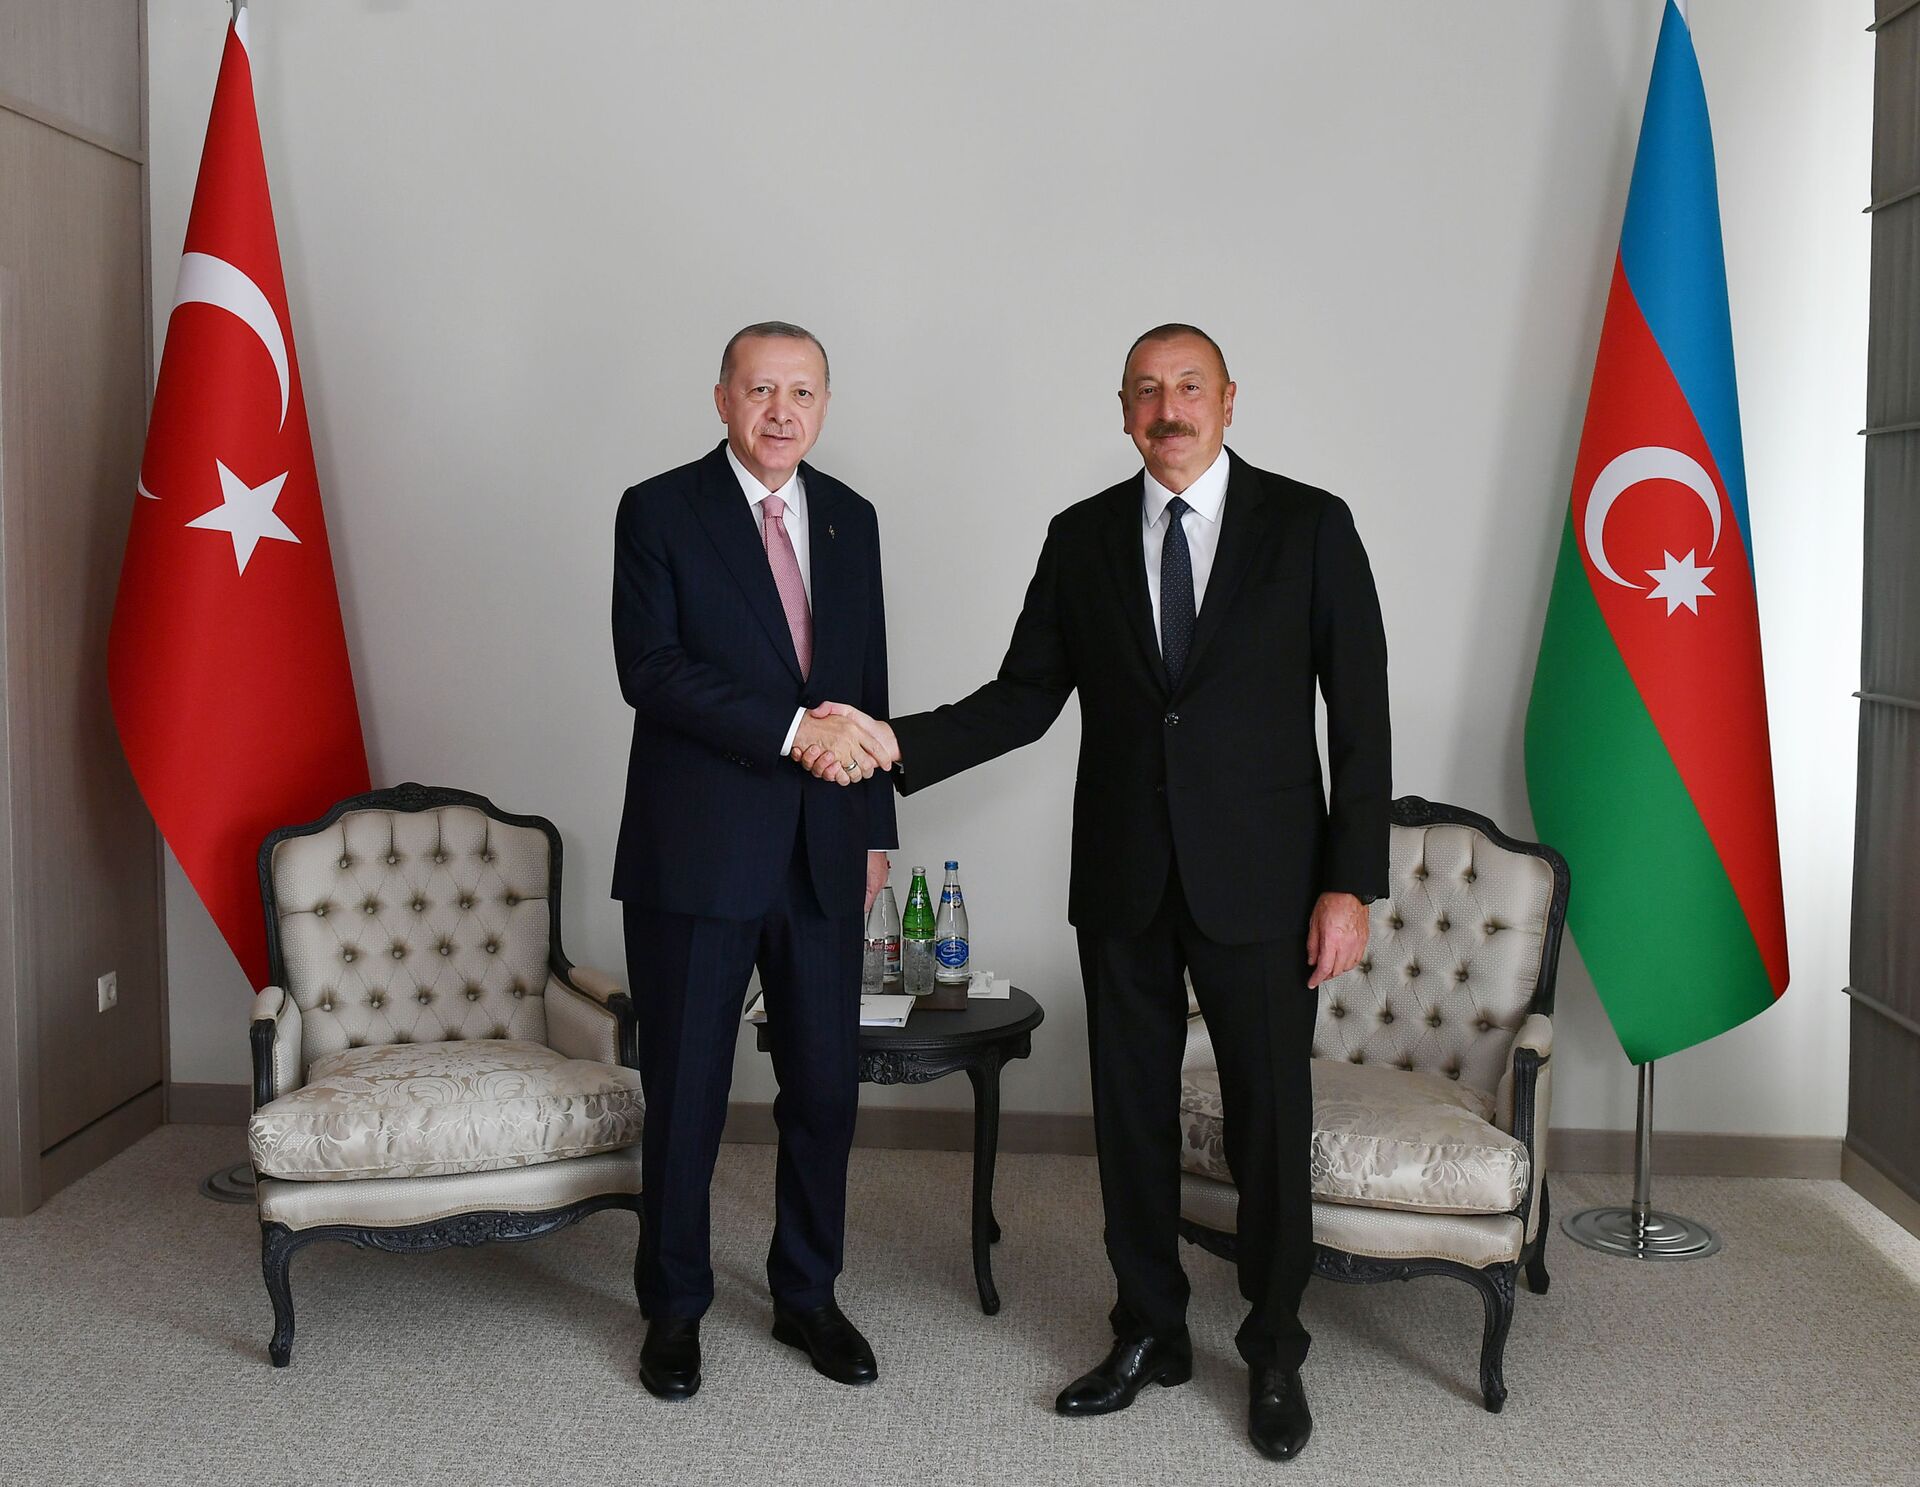 Переговоры Алиева и Эрдогана в Шуше: итоговые заявления - Sputnik Азербайджан, 1920, 16.06.2021